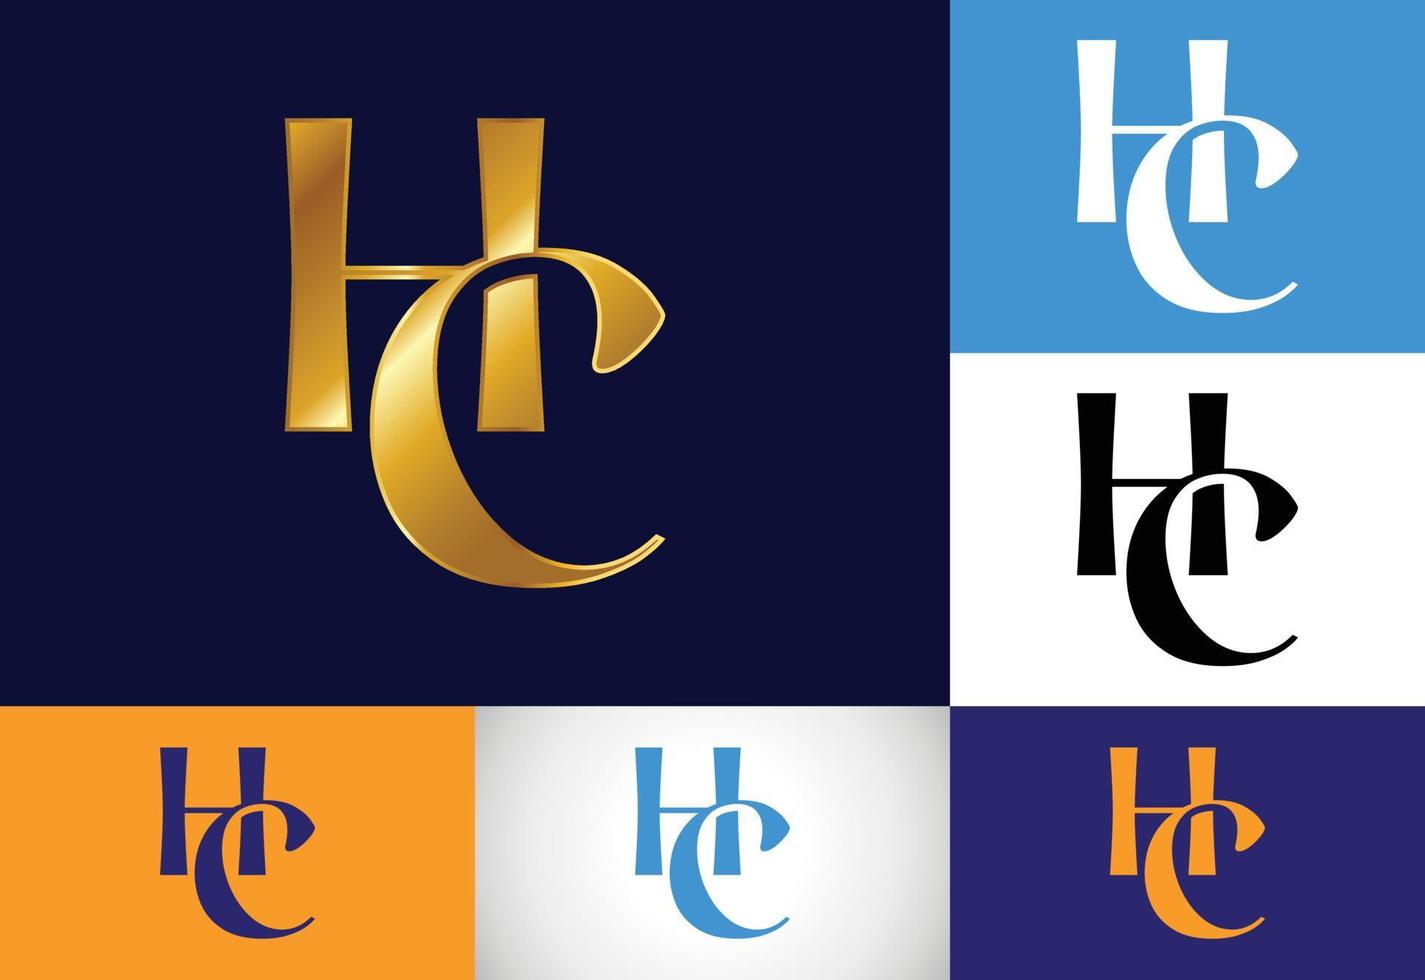 lettre initiale vecteur de conception de logo hc. symbole de l'alphabet graphique pour l'identité de l'entreprise